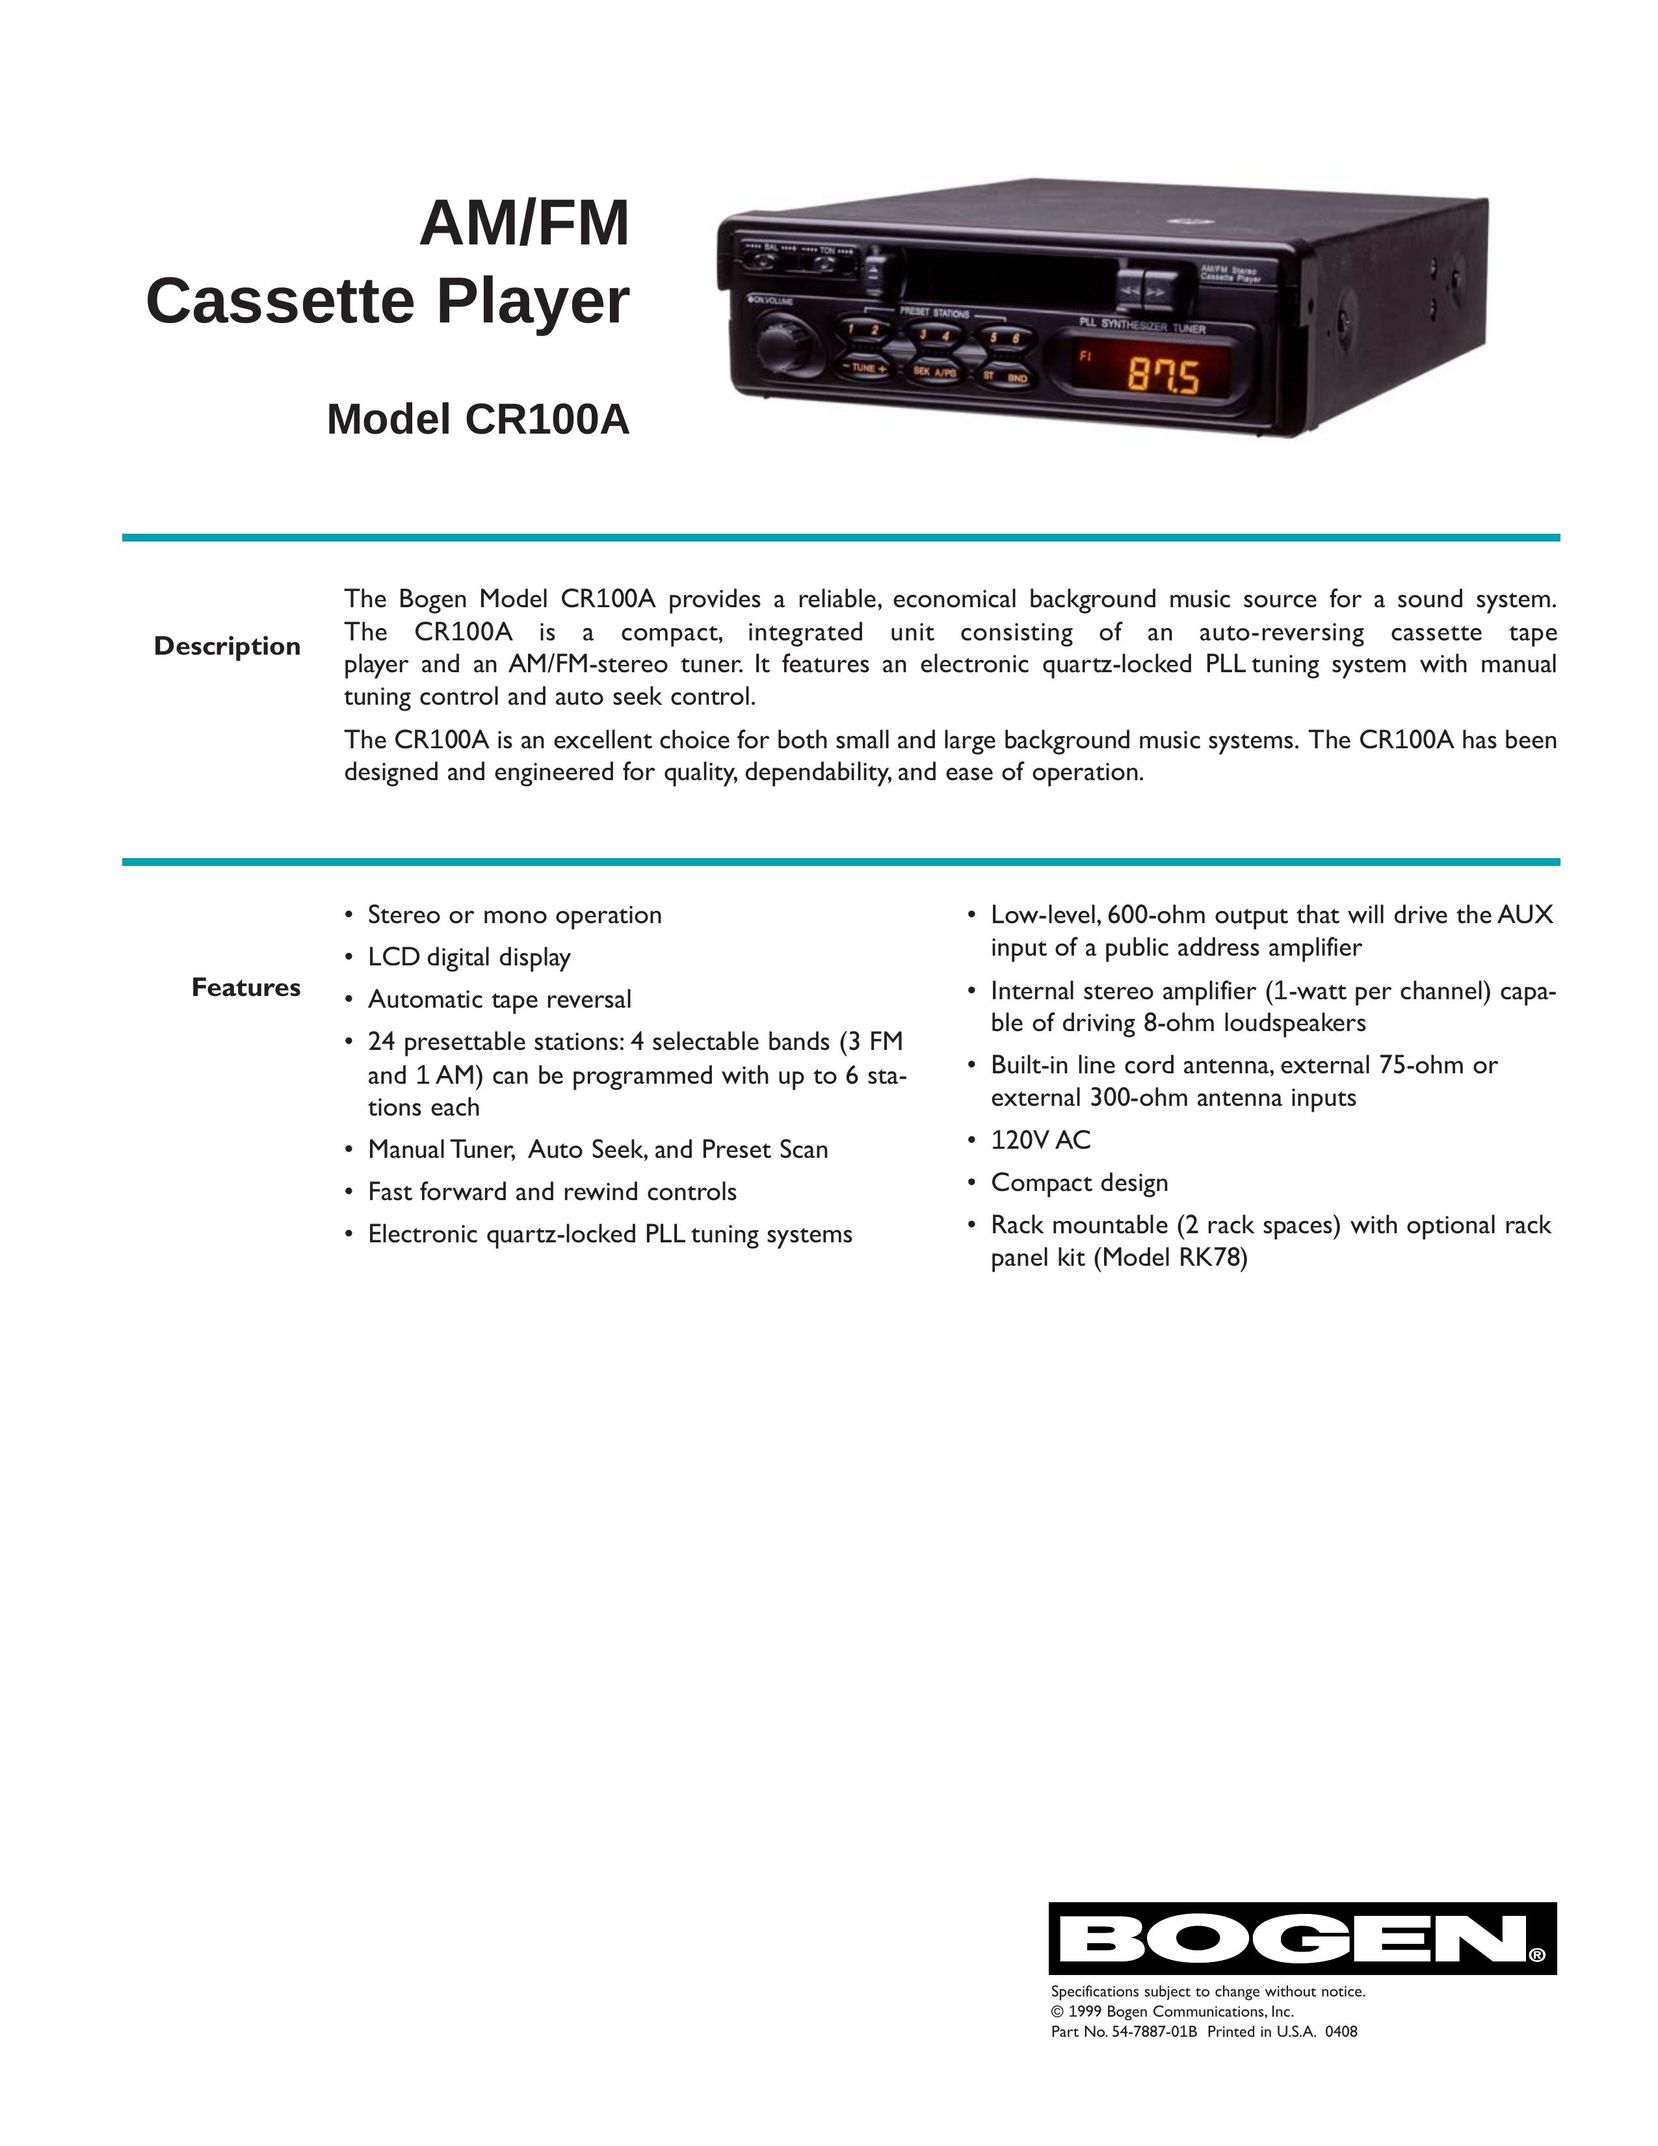 Bogen CR100A Cassette Player User Manual